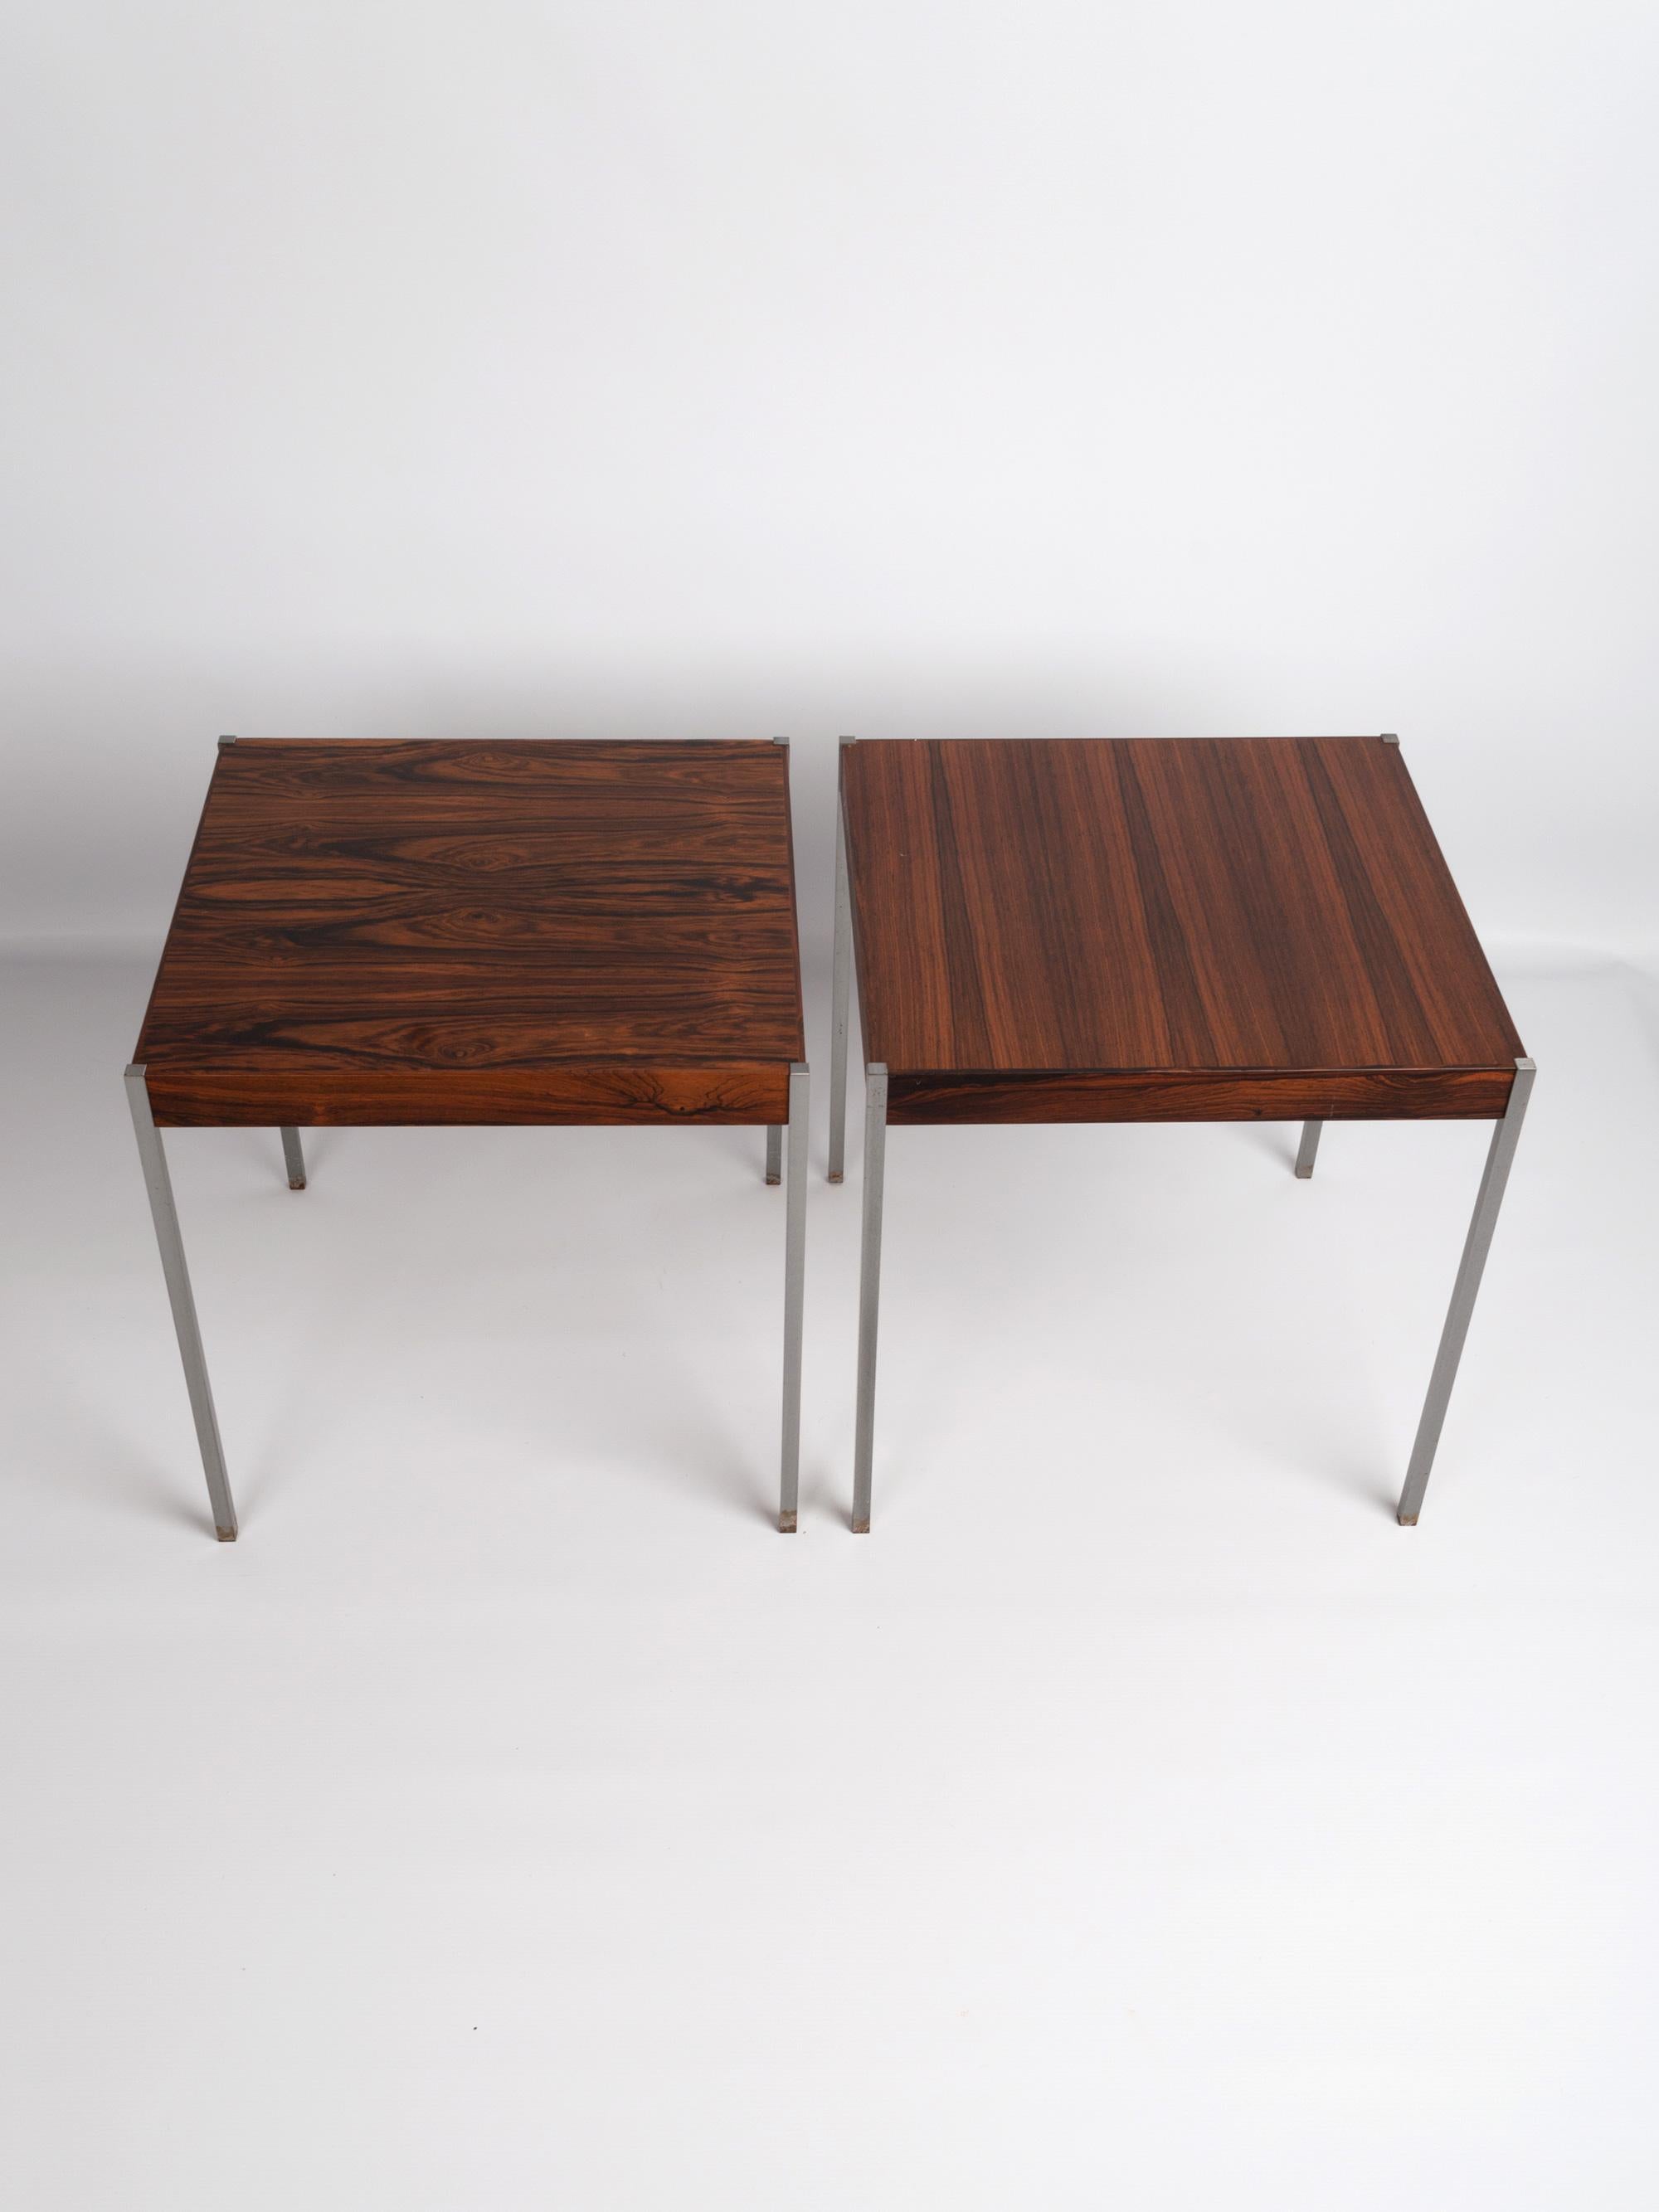 Une paire de tables d'appoint en bois de rose et acier par Uno & Östen Kristiansson pour Luxus Vittsjö. Suède, vers 1960.
En excellent état vintage proportionnel à l'âge.